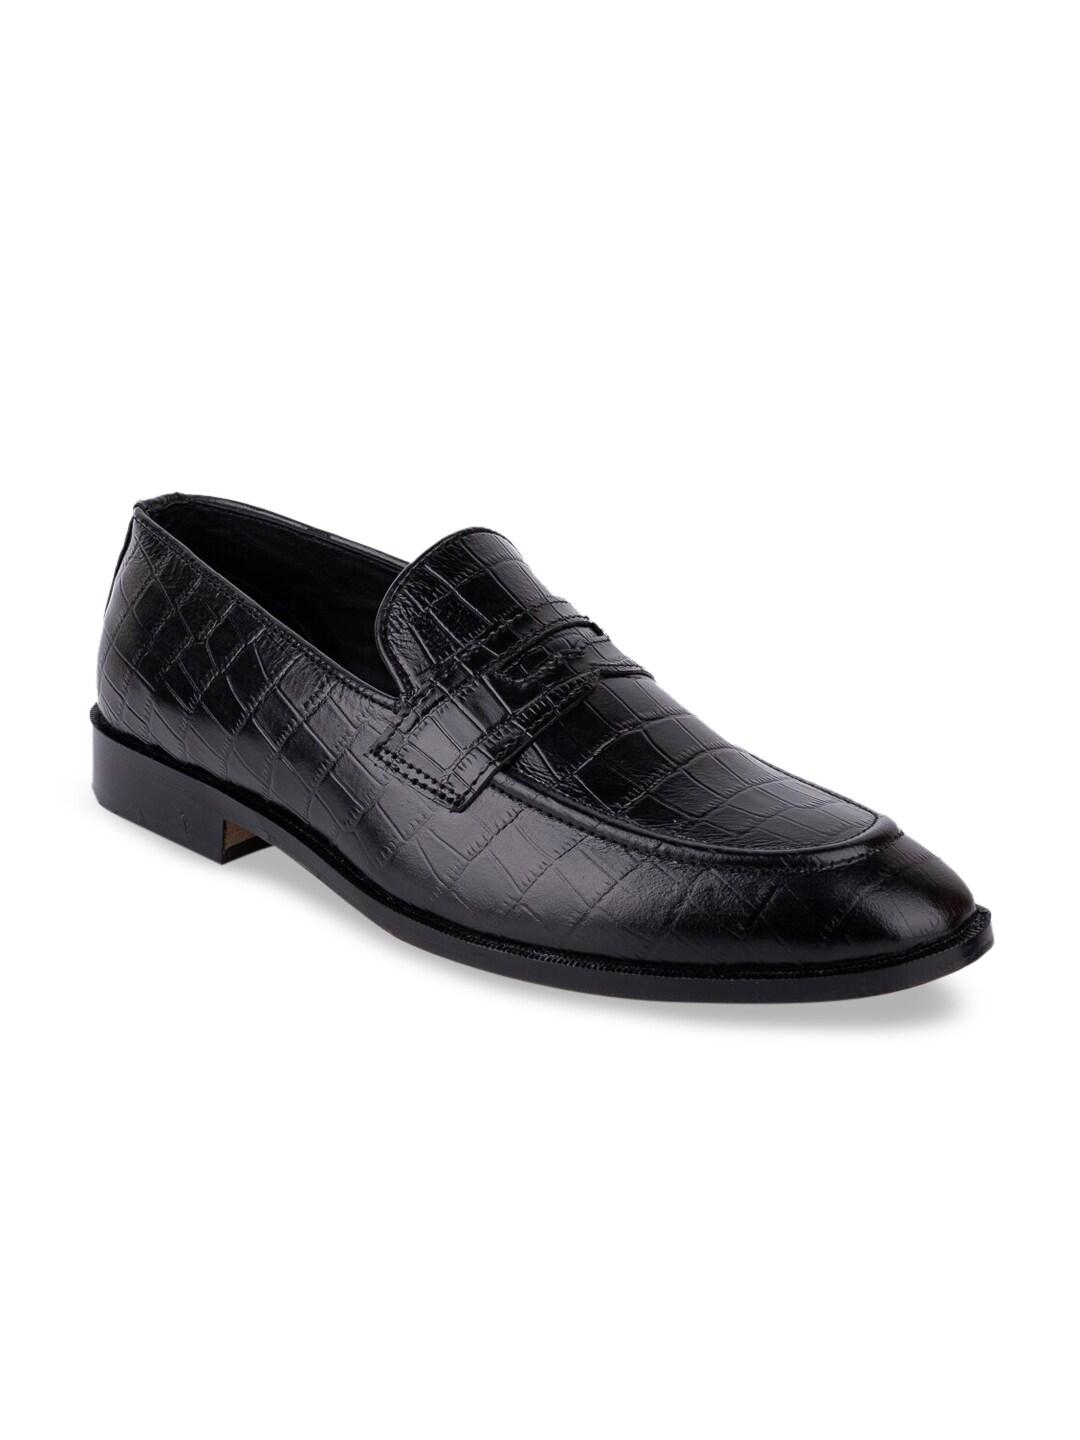 LA BOTTE Men Black Textured Leather Formal Loafers